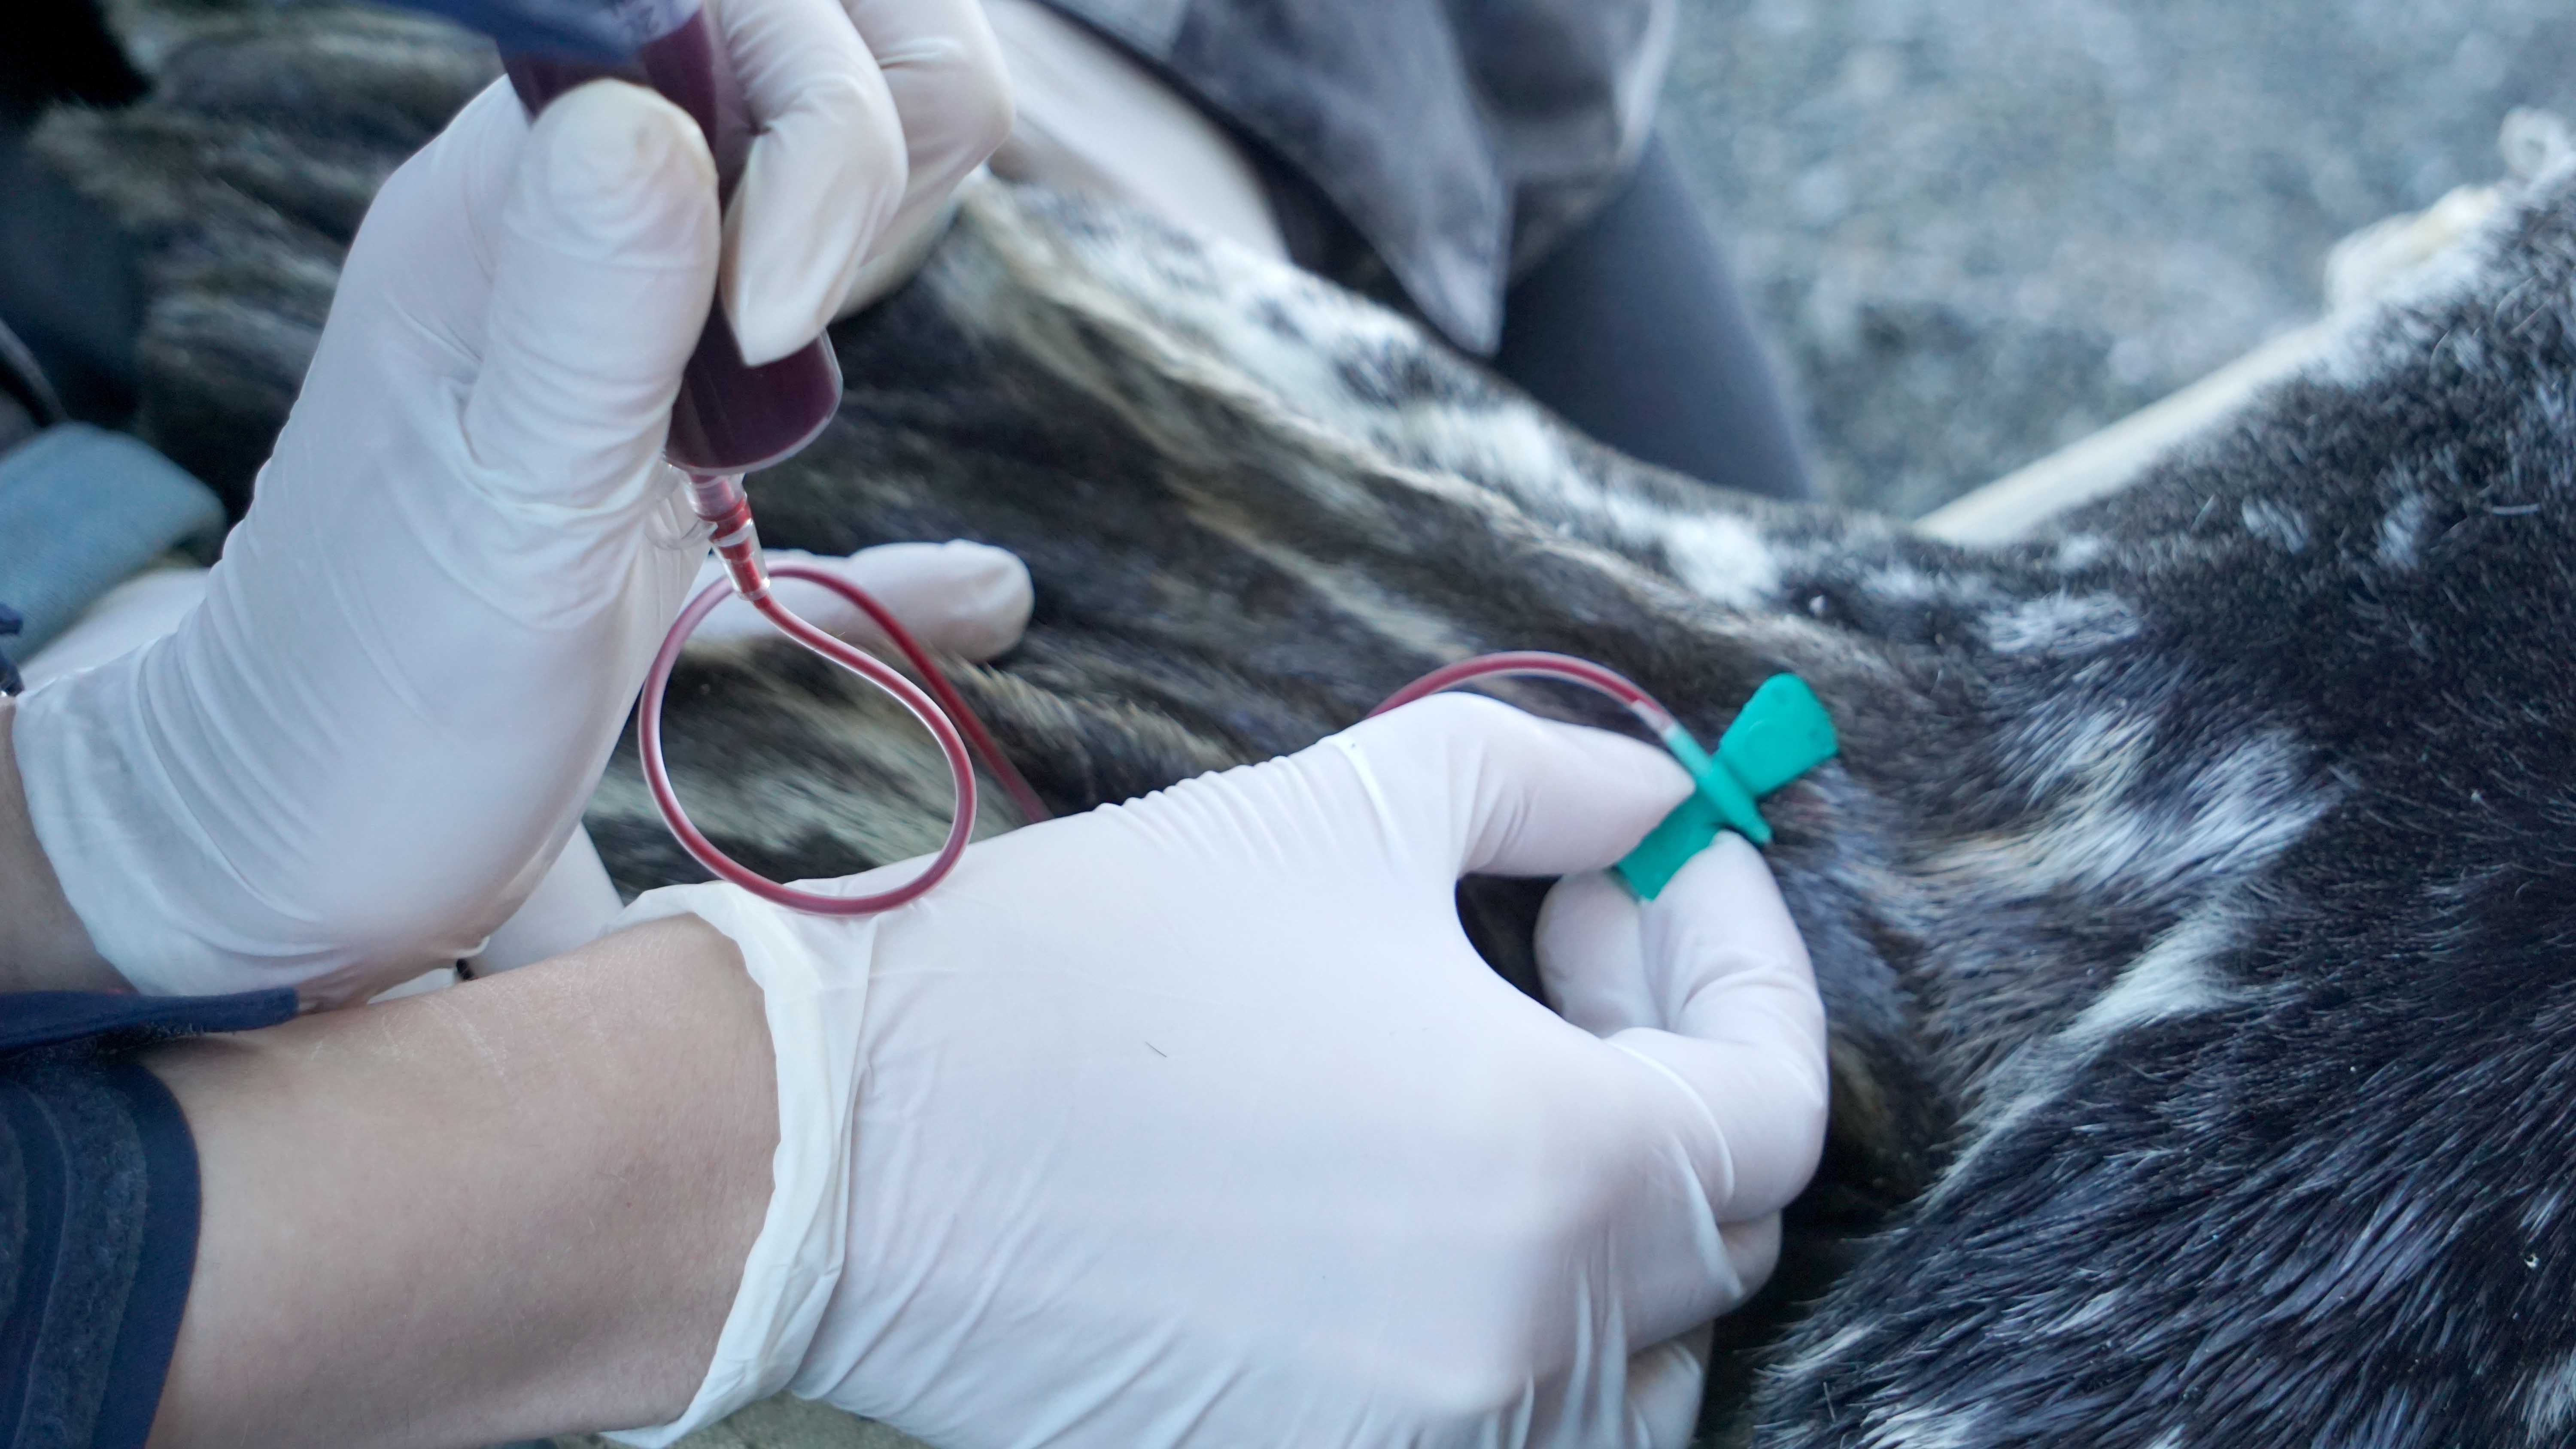 Клинические исследования крови морских млекопитающих позволят получить новые данные о физиологии животных, живущих в естественных условиях